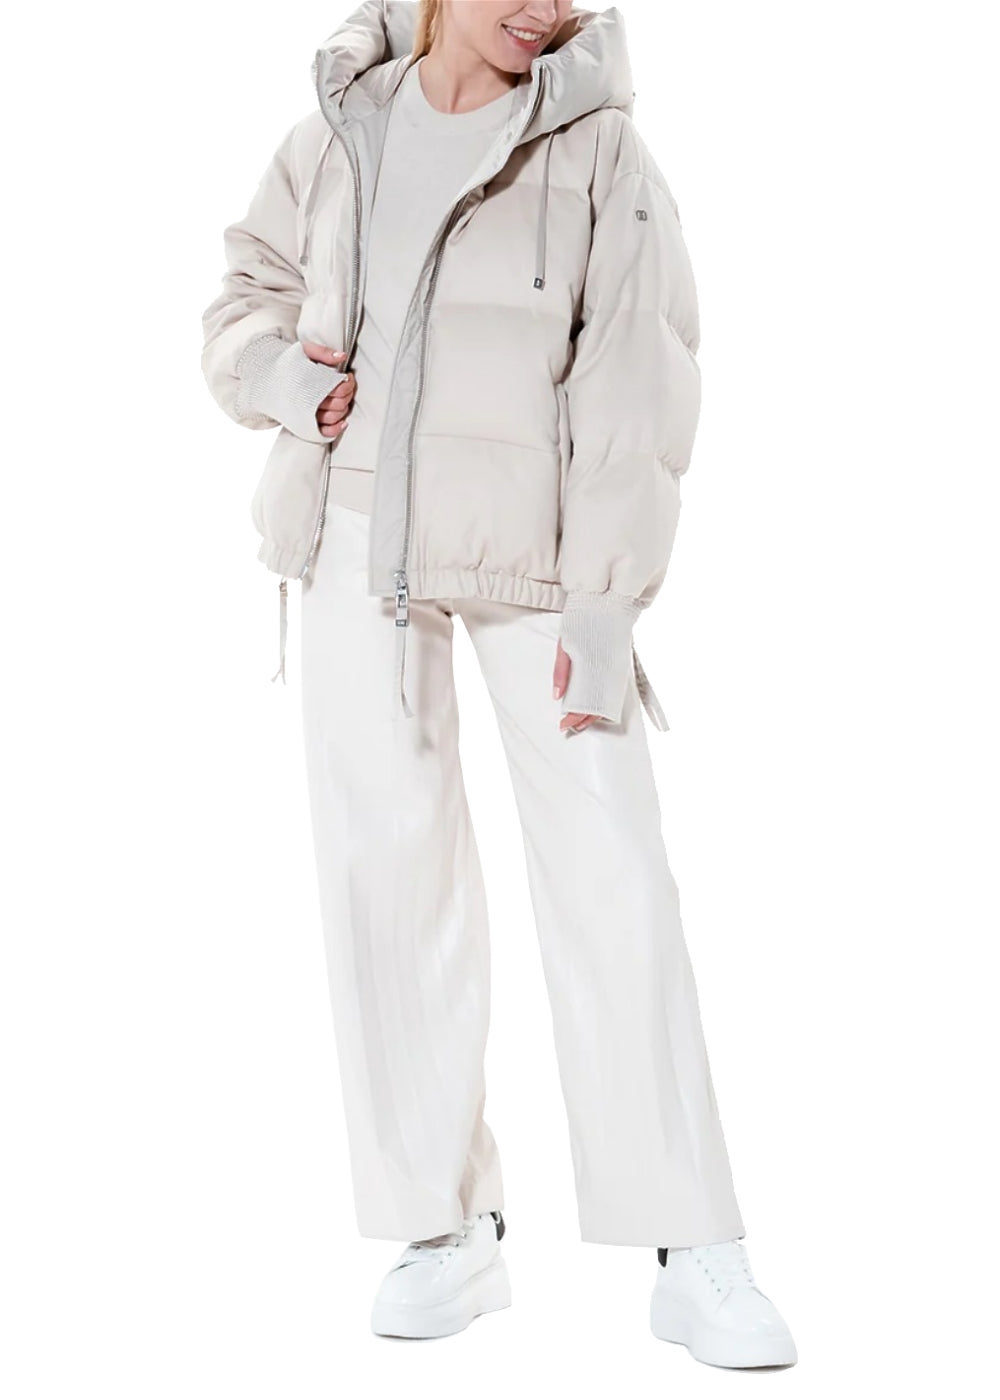 Duno Damen Jacke Heka in creme. Steppjacke in edler Wollqualität mit Kapuze von Duno online kaufen. Edel sportive Damenjacke in hochwertiger Verarbeitung aus der neuen Duno Kollektion.